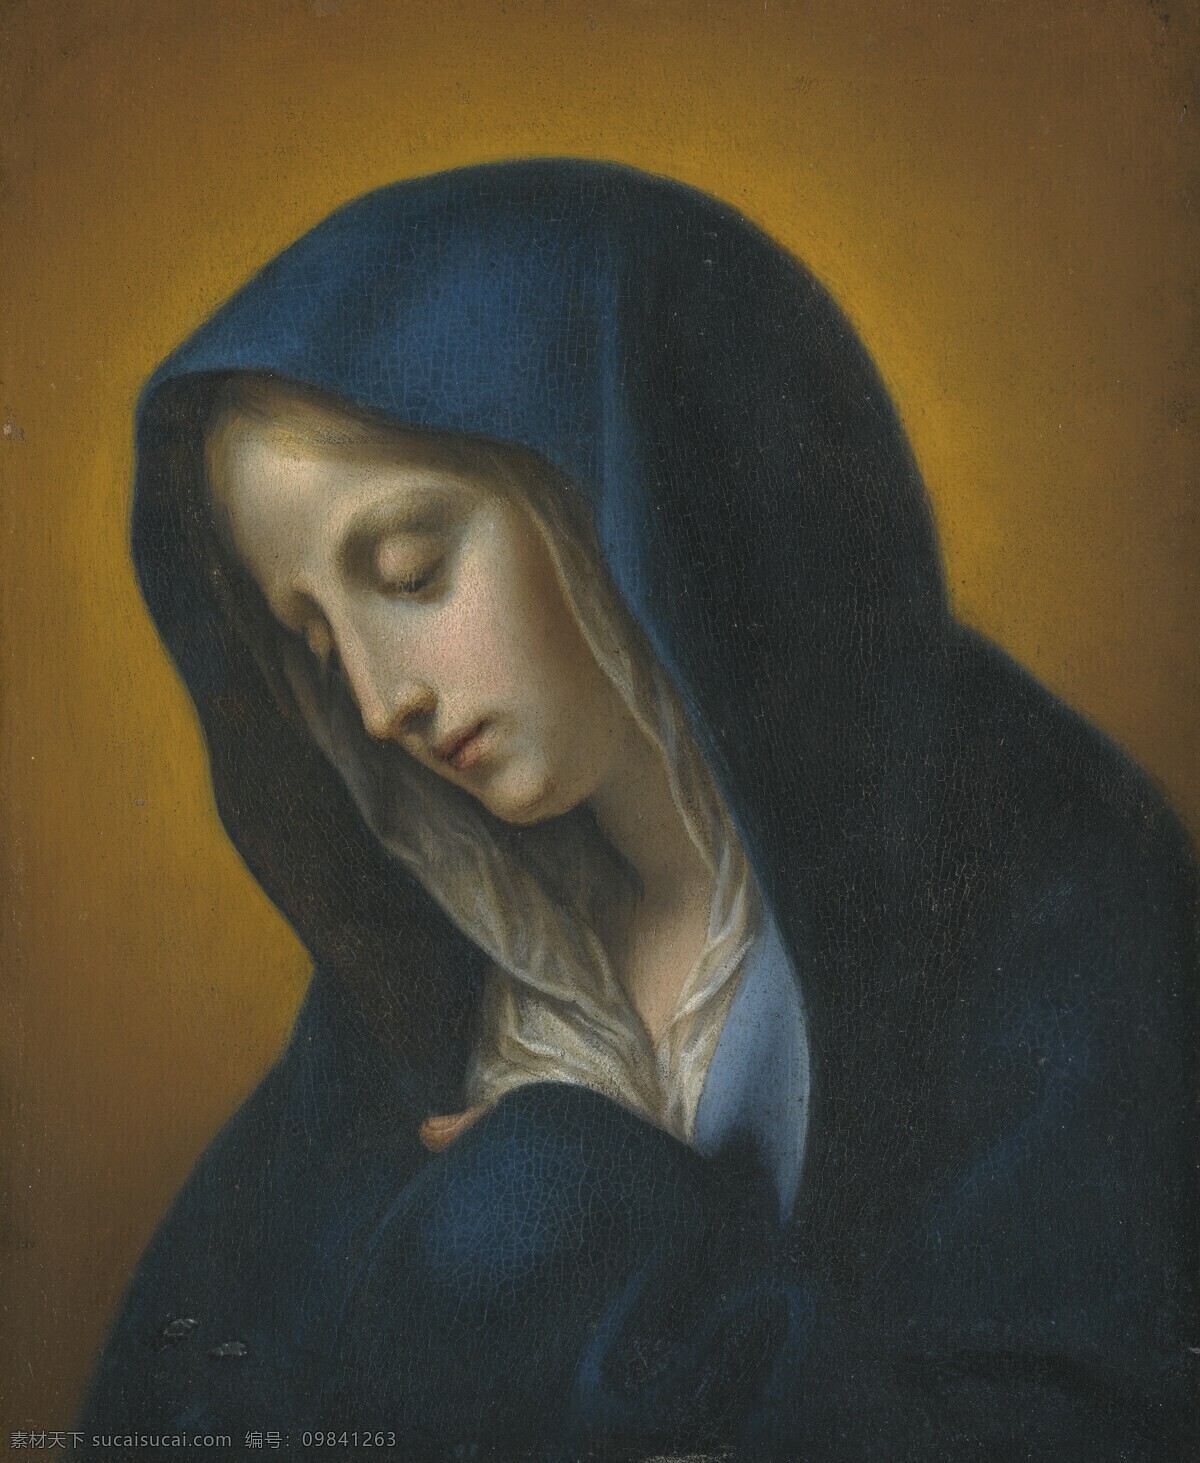 圣母玛丽娅 古典油画 肖像 沉思 宗教油画 油画 绘画书法 文化艺术